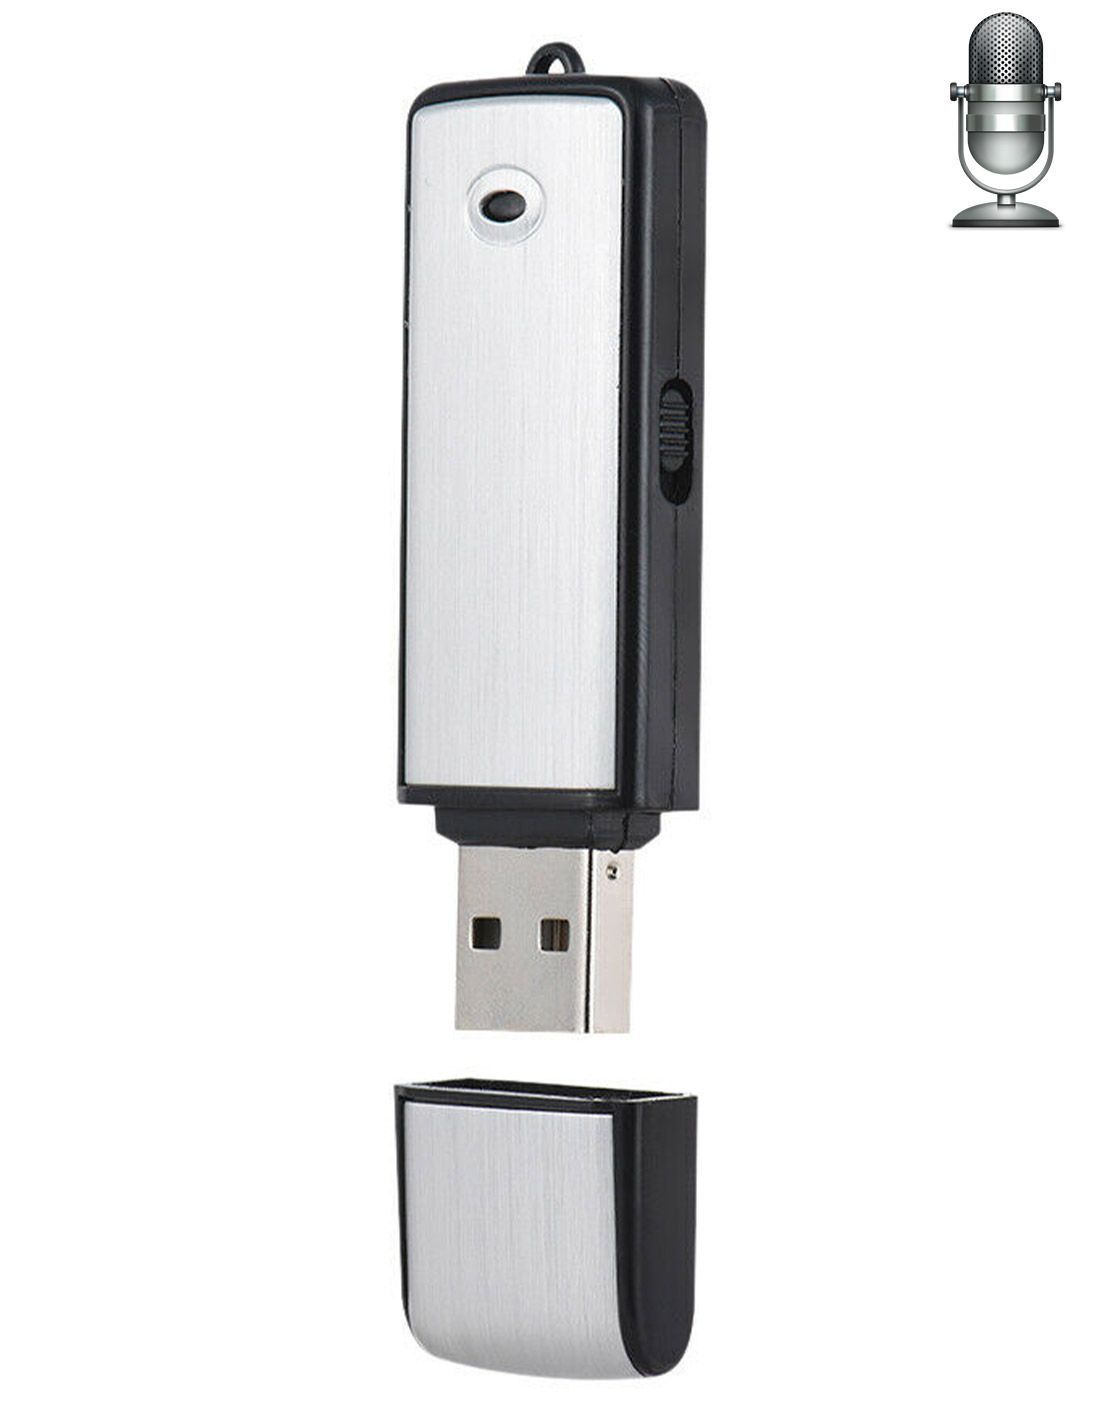 Dictaphone enregistreur - clé USB - enregistrement audio